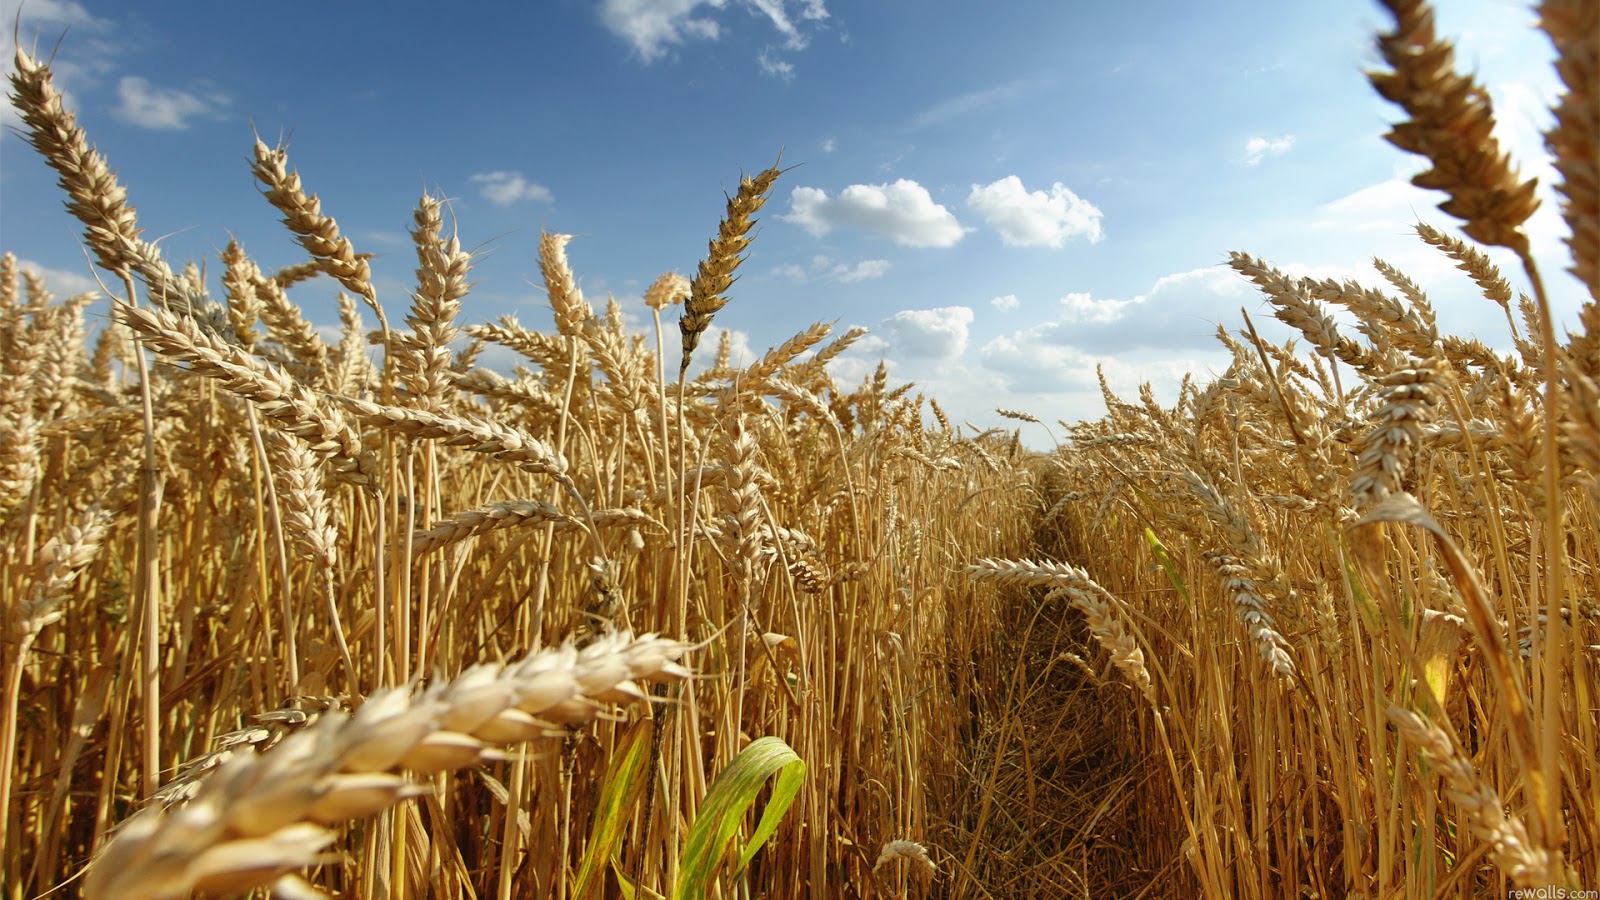 Plantio do trigo avança e chega a 26% do total previsto para o RS